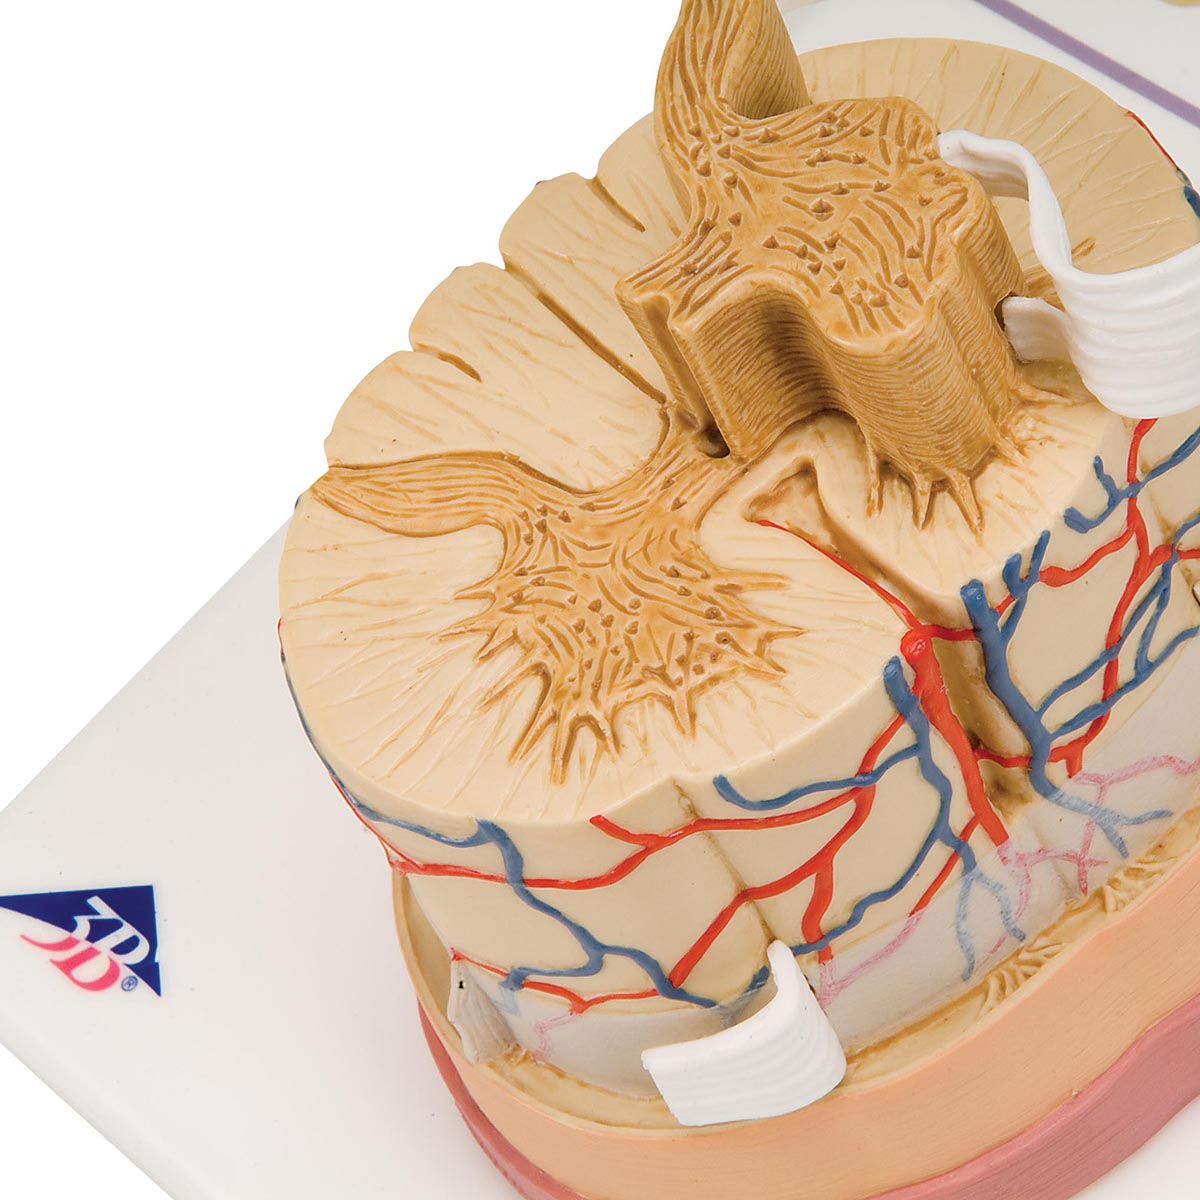 Förstorad modell som visar ett tvärsnitt av ryggmärgen inkl. hjärnhinnorna, blodkärlen och en spinalnerv